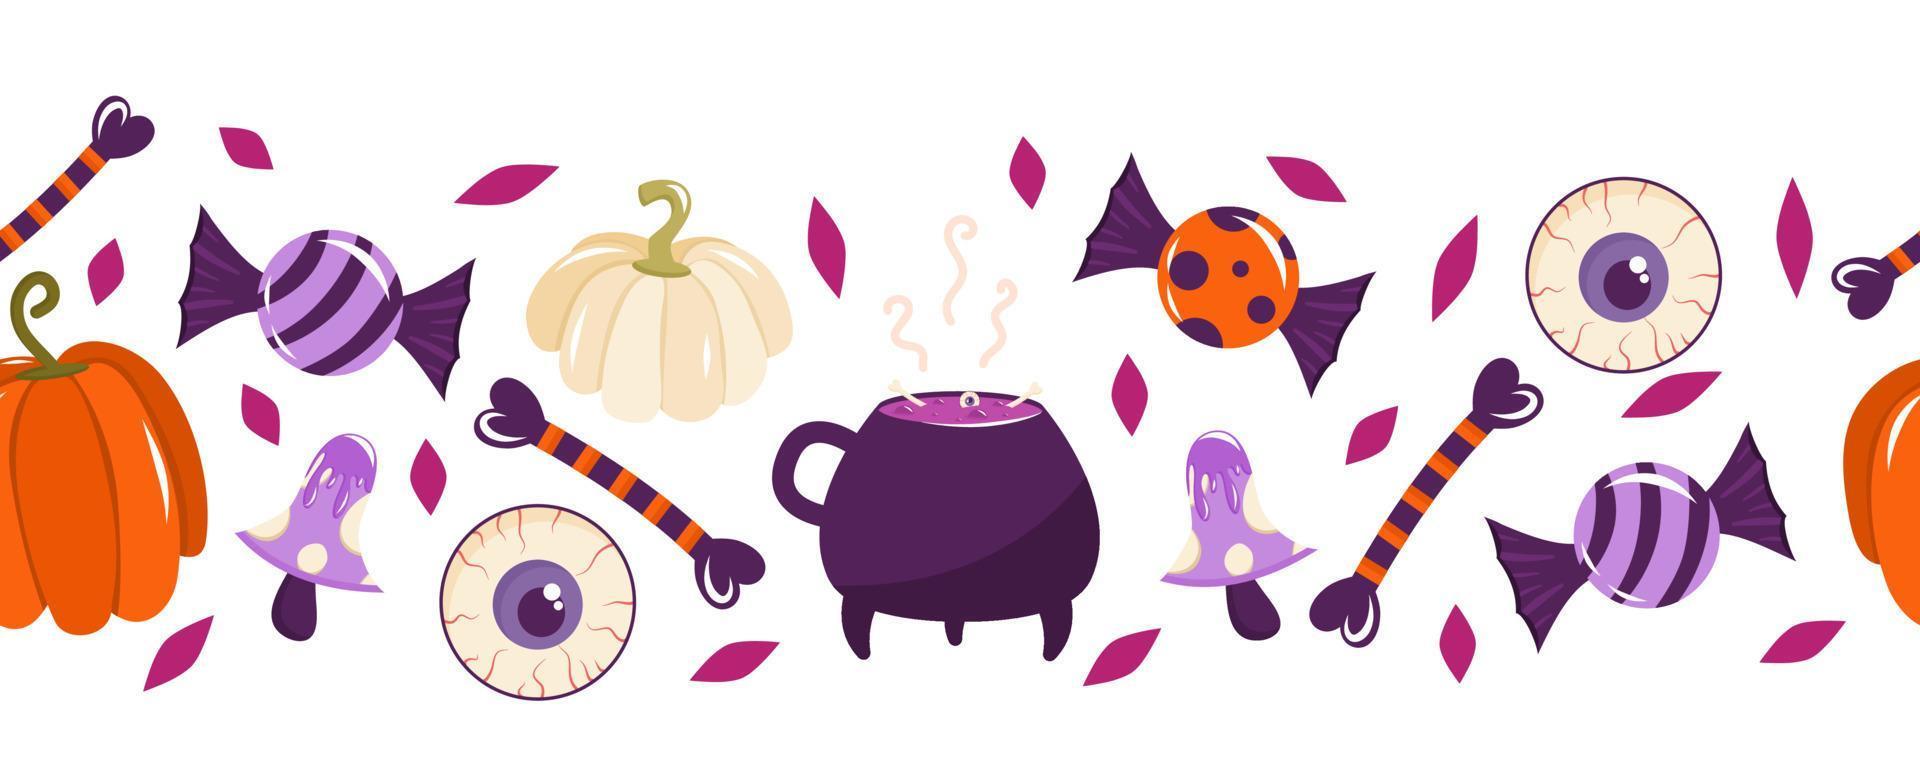 fronteira perfeita para o halloween com doces, ossos, cogumelos, um caldeirão de bruxa e um globo ocular. ilustração em vetor de um padrão sem emenda.